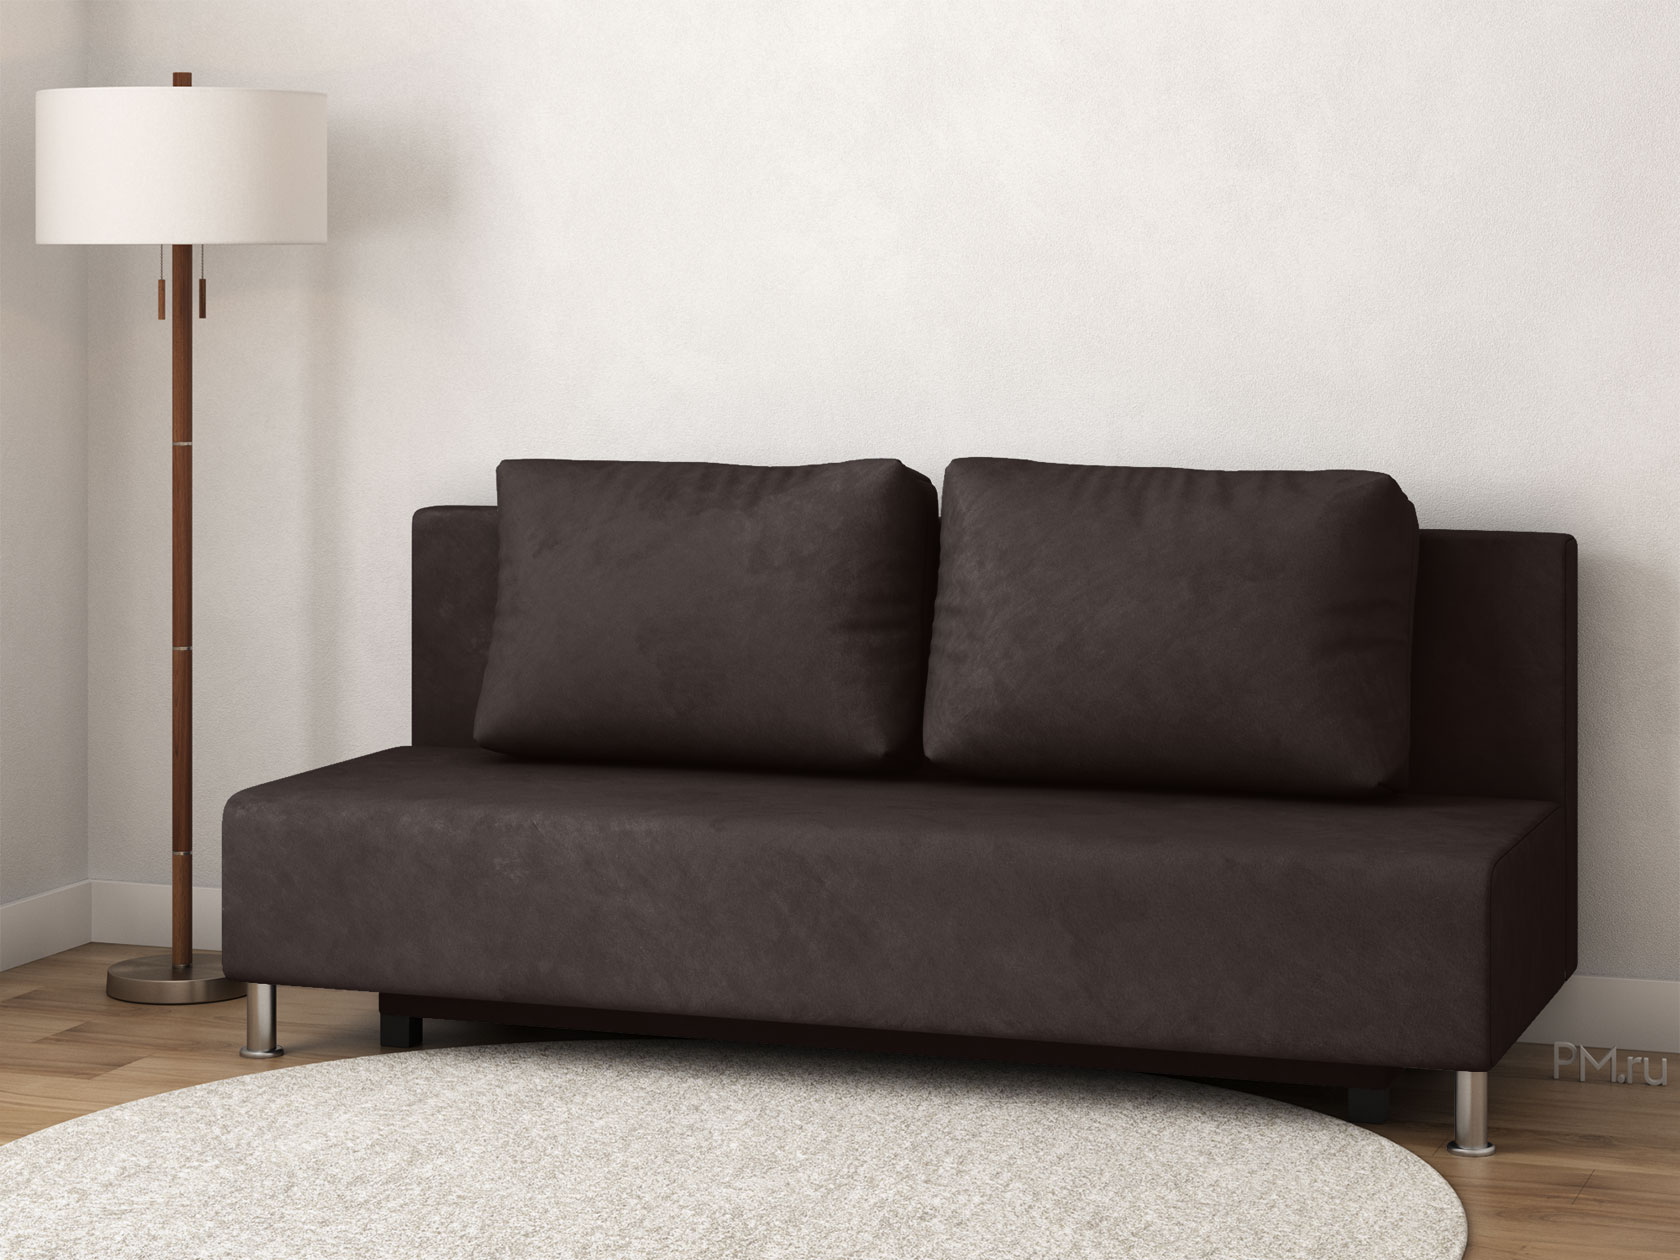 Прямой диван Парма Светло-серый, велюр 155237 купить в Москве винтернет-магазине «Первый Мебельный»